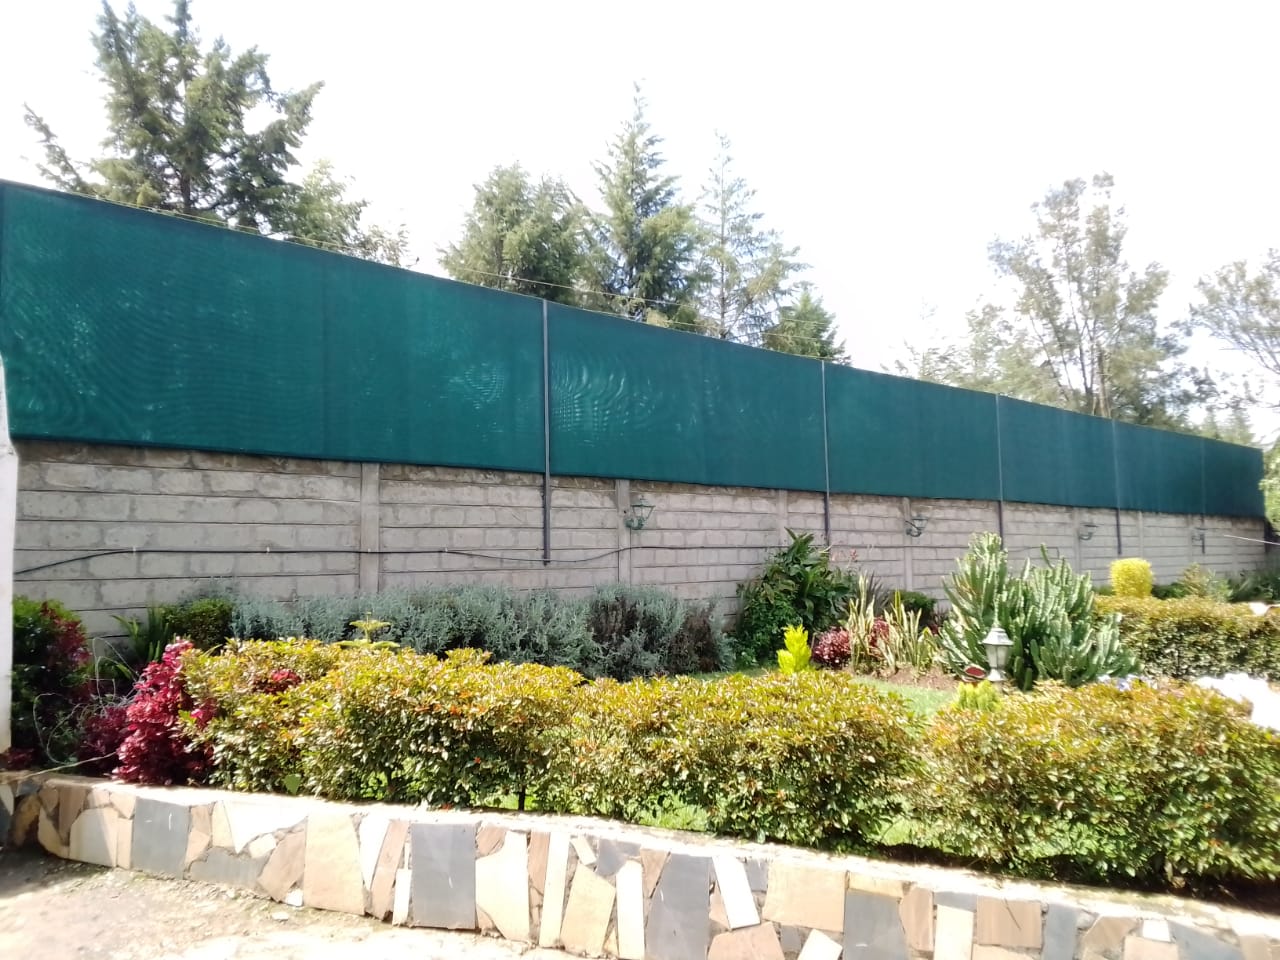 Privacy Screen-Perimeter Wall Shade Net Fence-Green Mesh Net-Wind Breaker